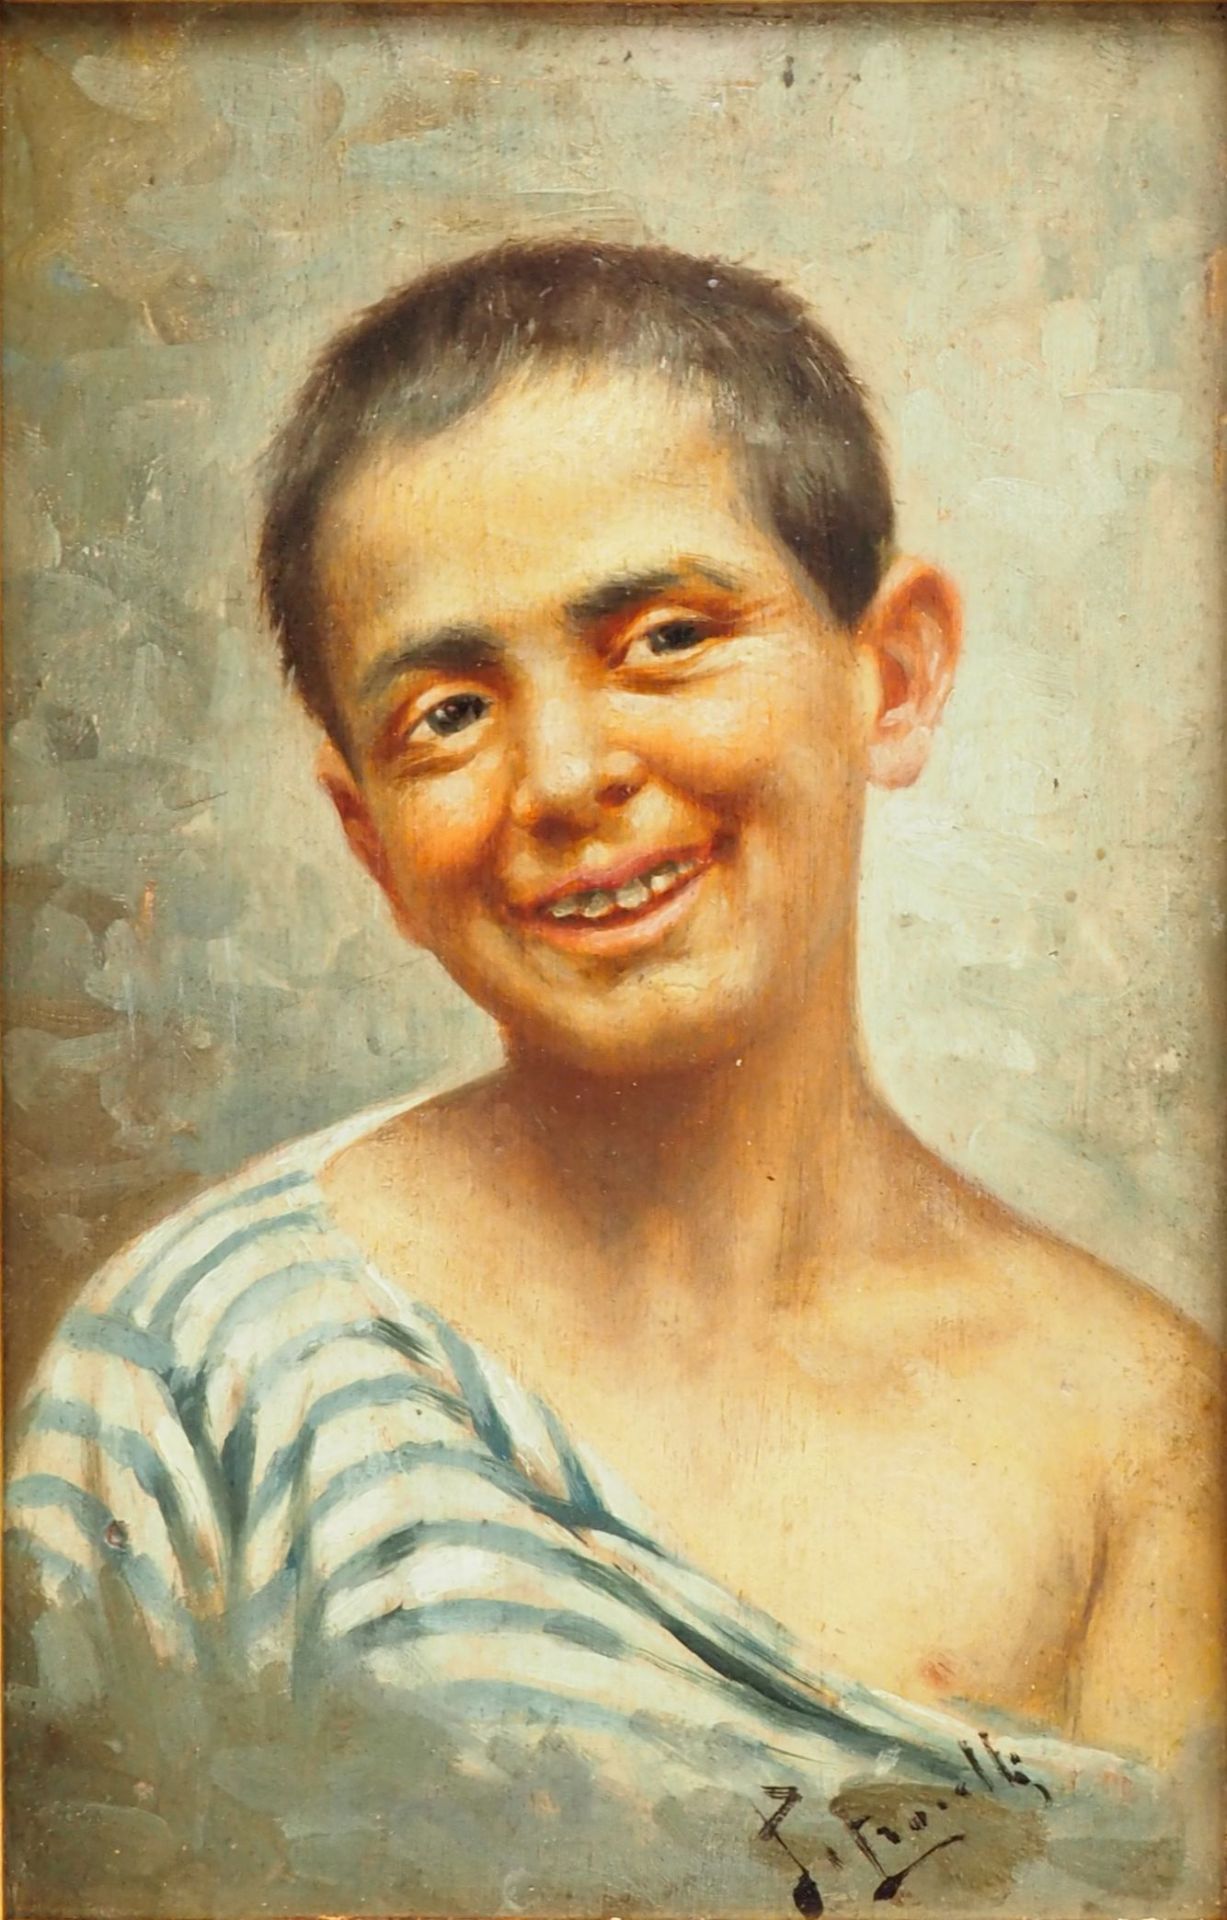 Brustbild eines Jungen.